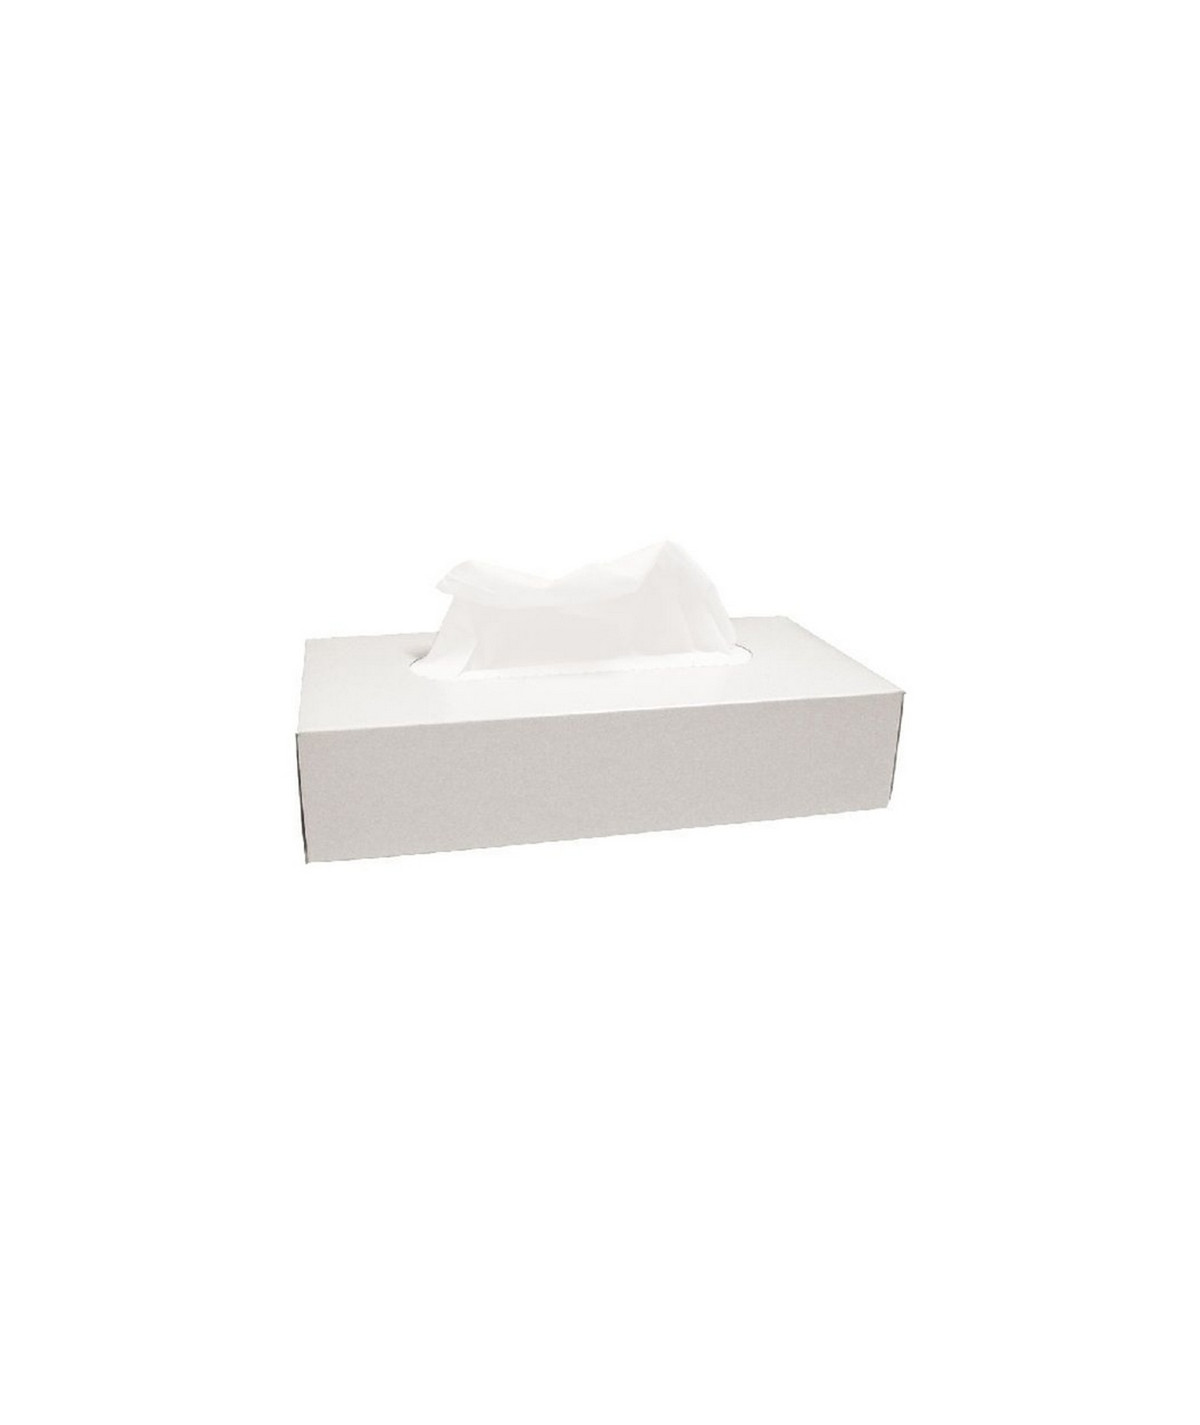 Mouchoir en papier Lyreco - boîte distributrice rectangulaire de 100